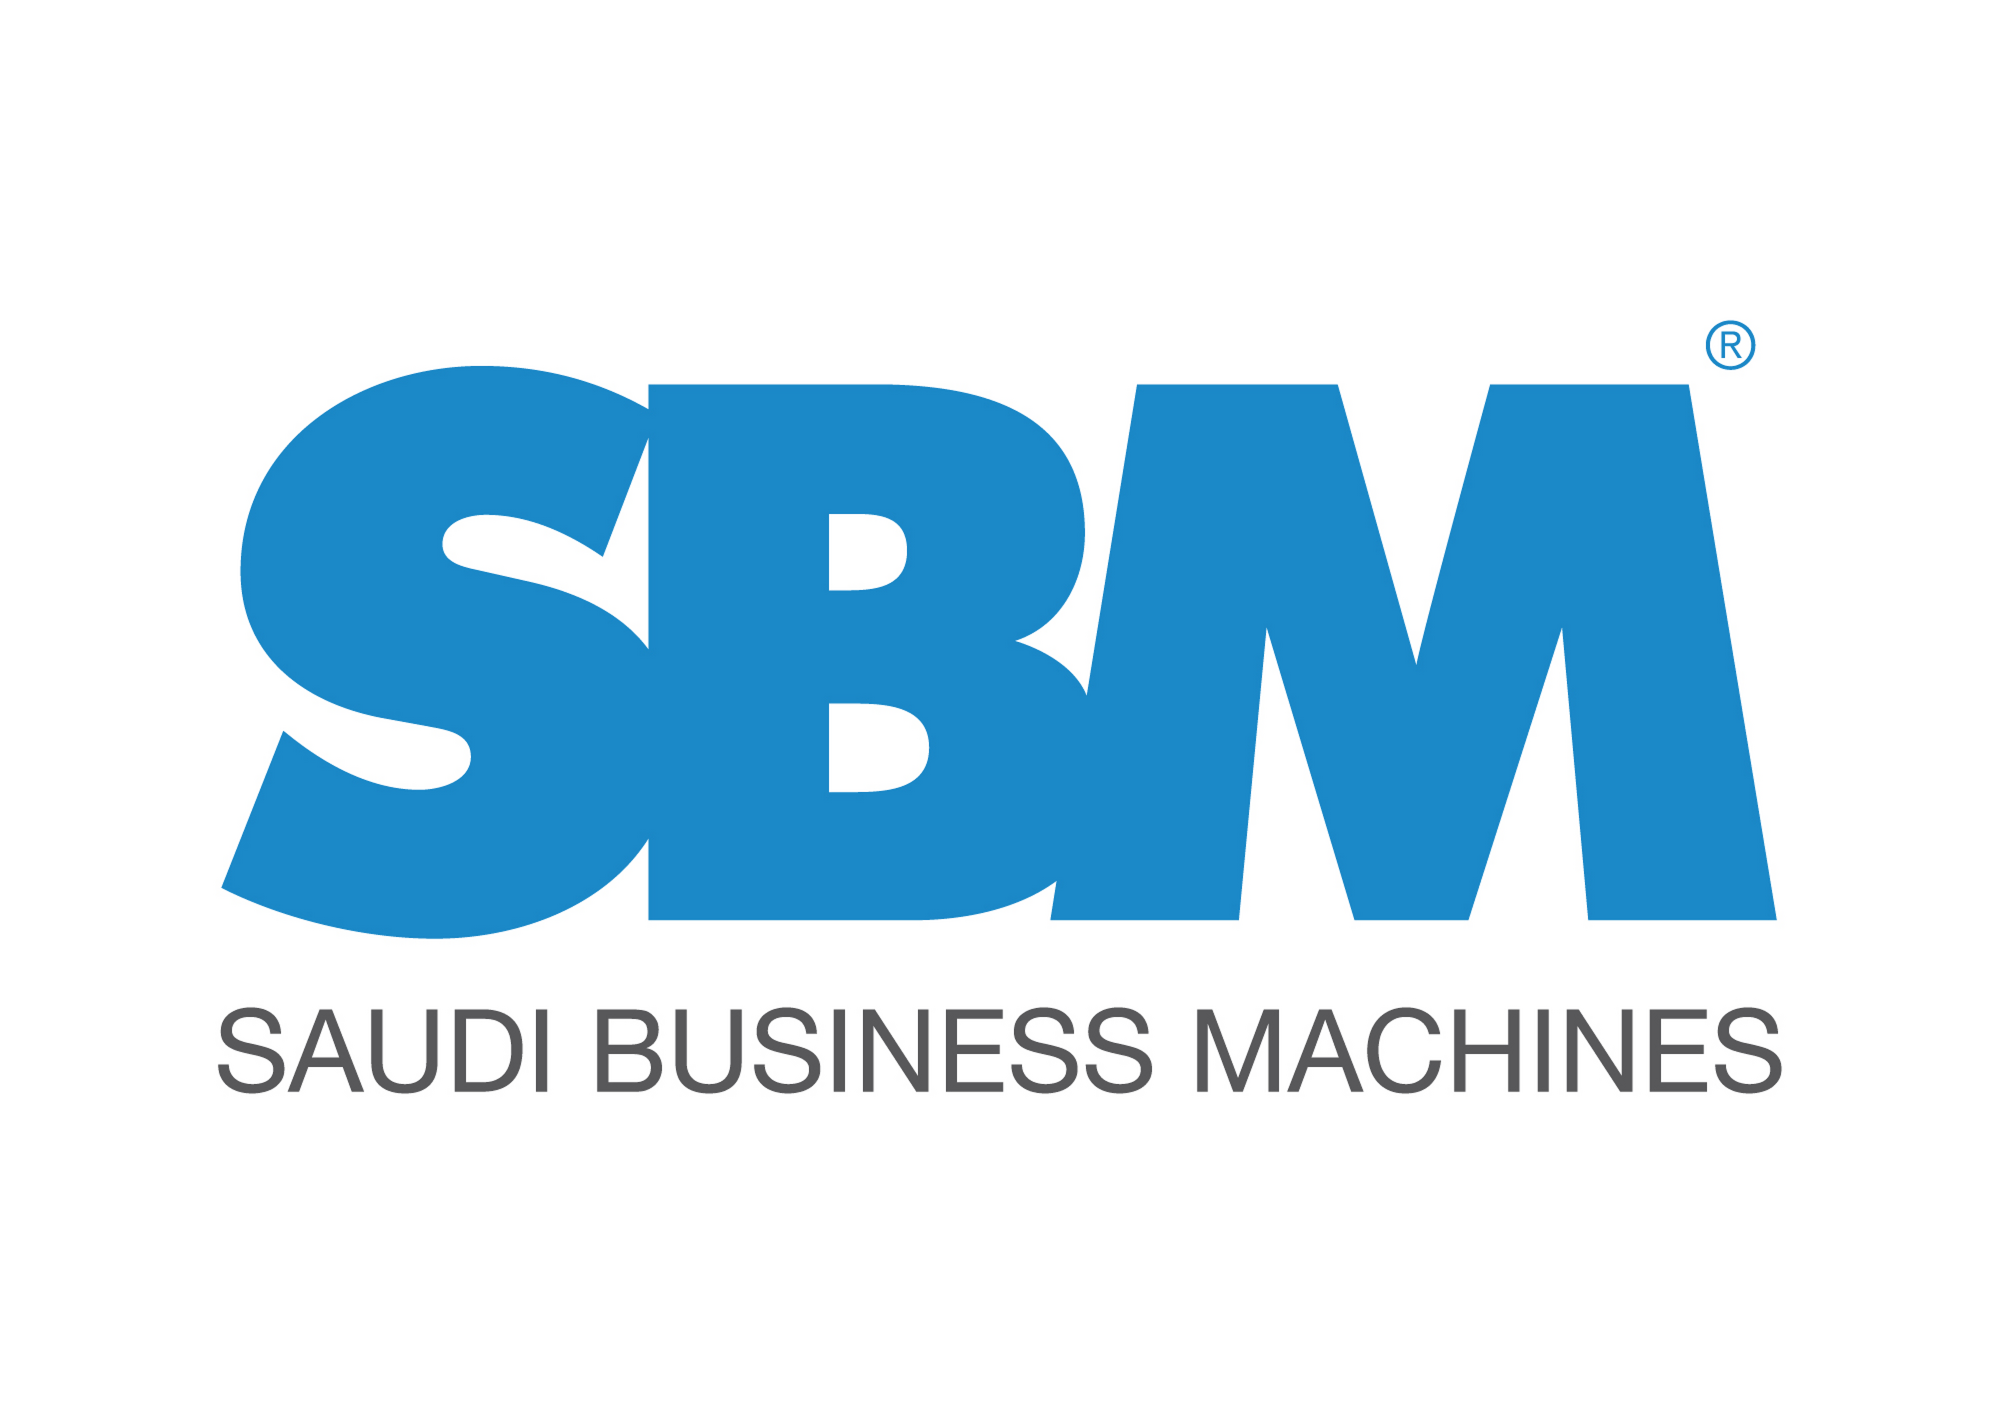 Letter Sbm Logo Three Letter Logo Stock-vektor (royaltyfri) 2189374325 |  Shutterstock